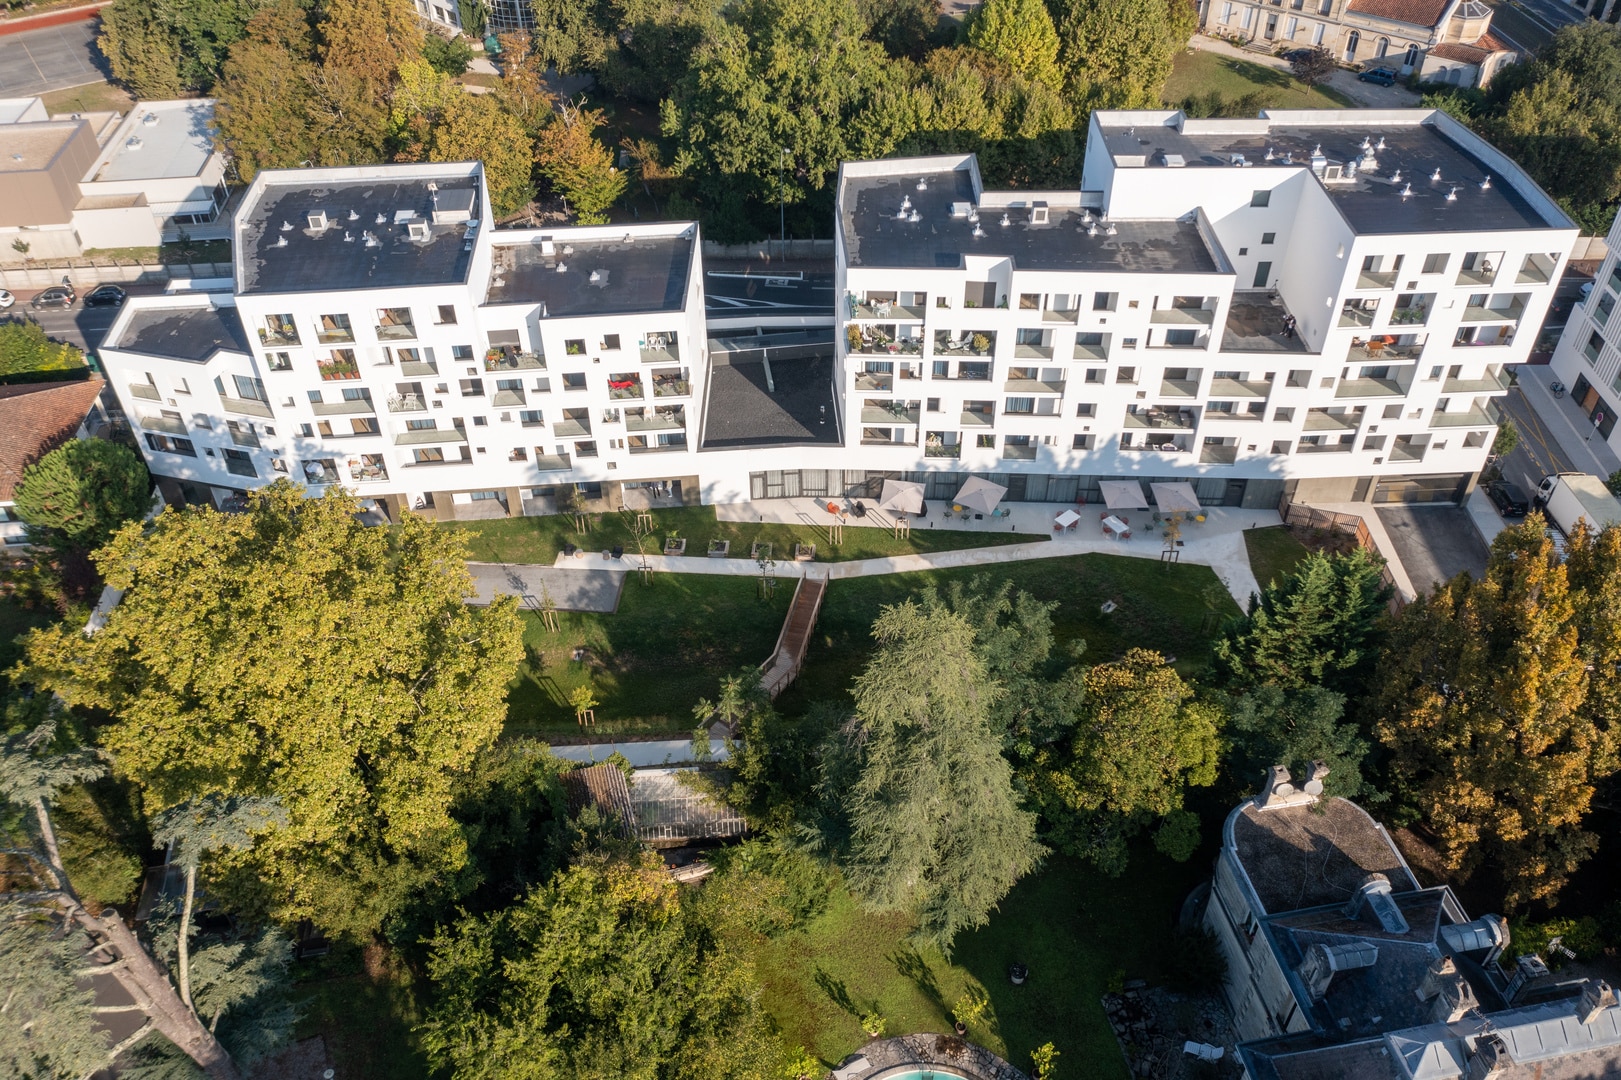 Vue aérienne d'un complexe résidentiel moderne avec un jardin central soigneusement aménagé. Les bâtiments blancs aux fenêtres géométriques contrastent avec le vert luxuriant des arbres environnants, mettant en évidence une architecture urbaine intégrée dans un espace naturel.